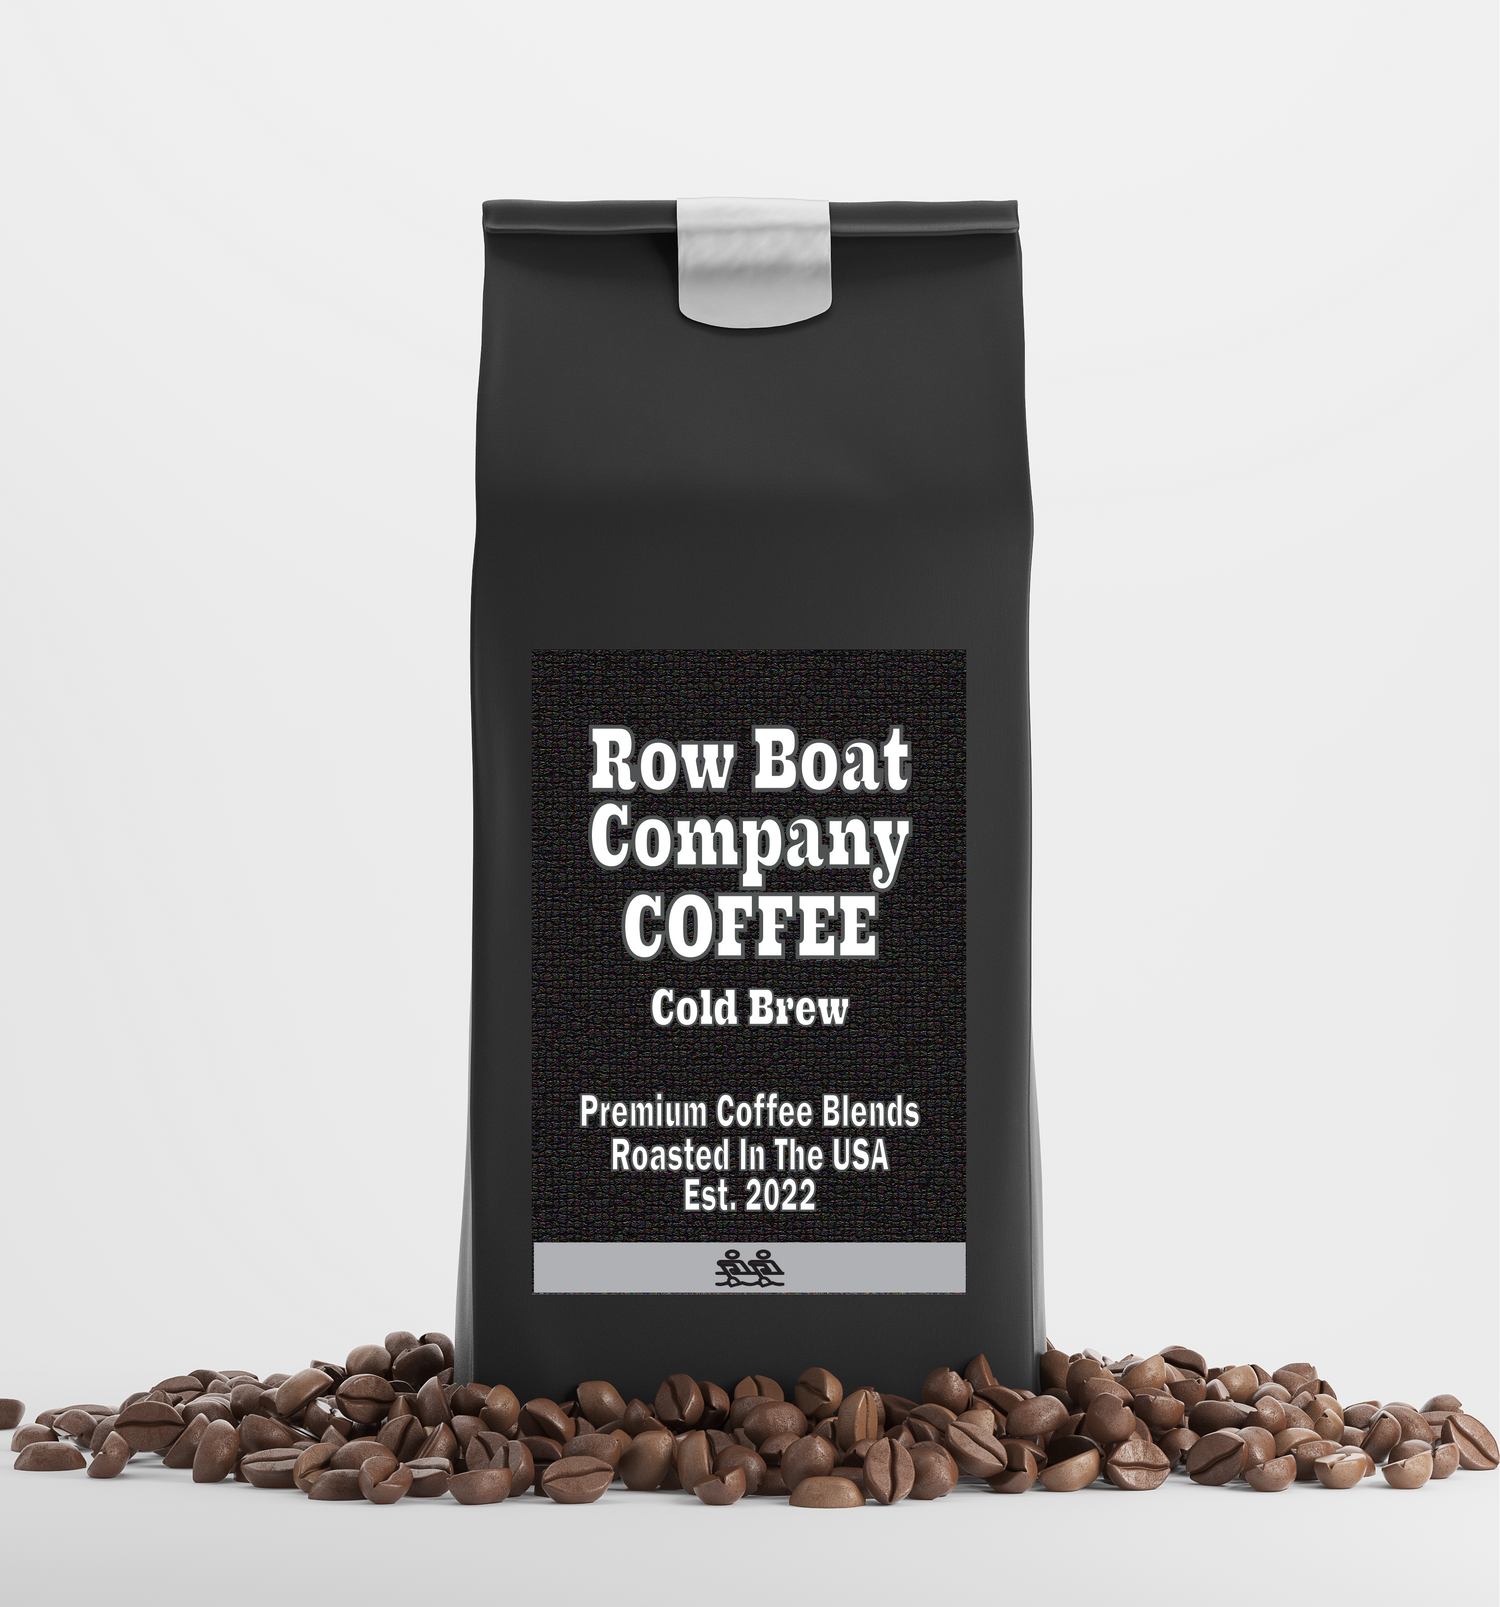 Cold Brew Coffee Flavor - Premium Coffee